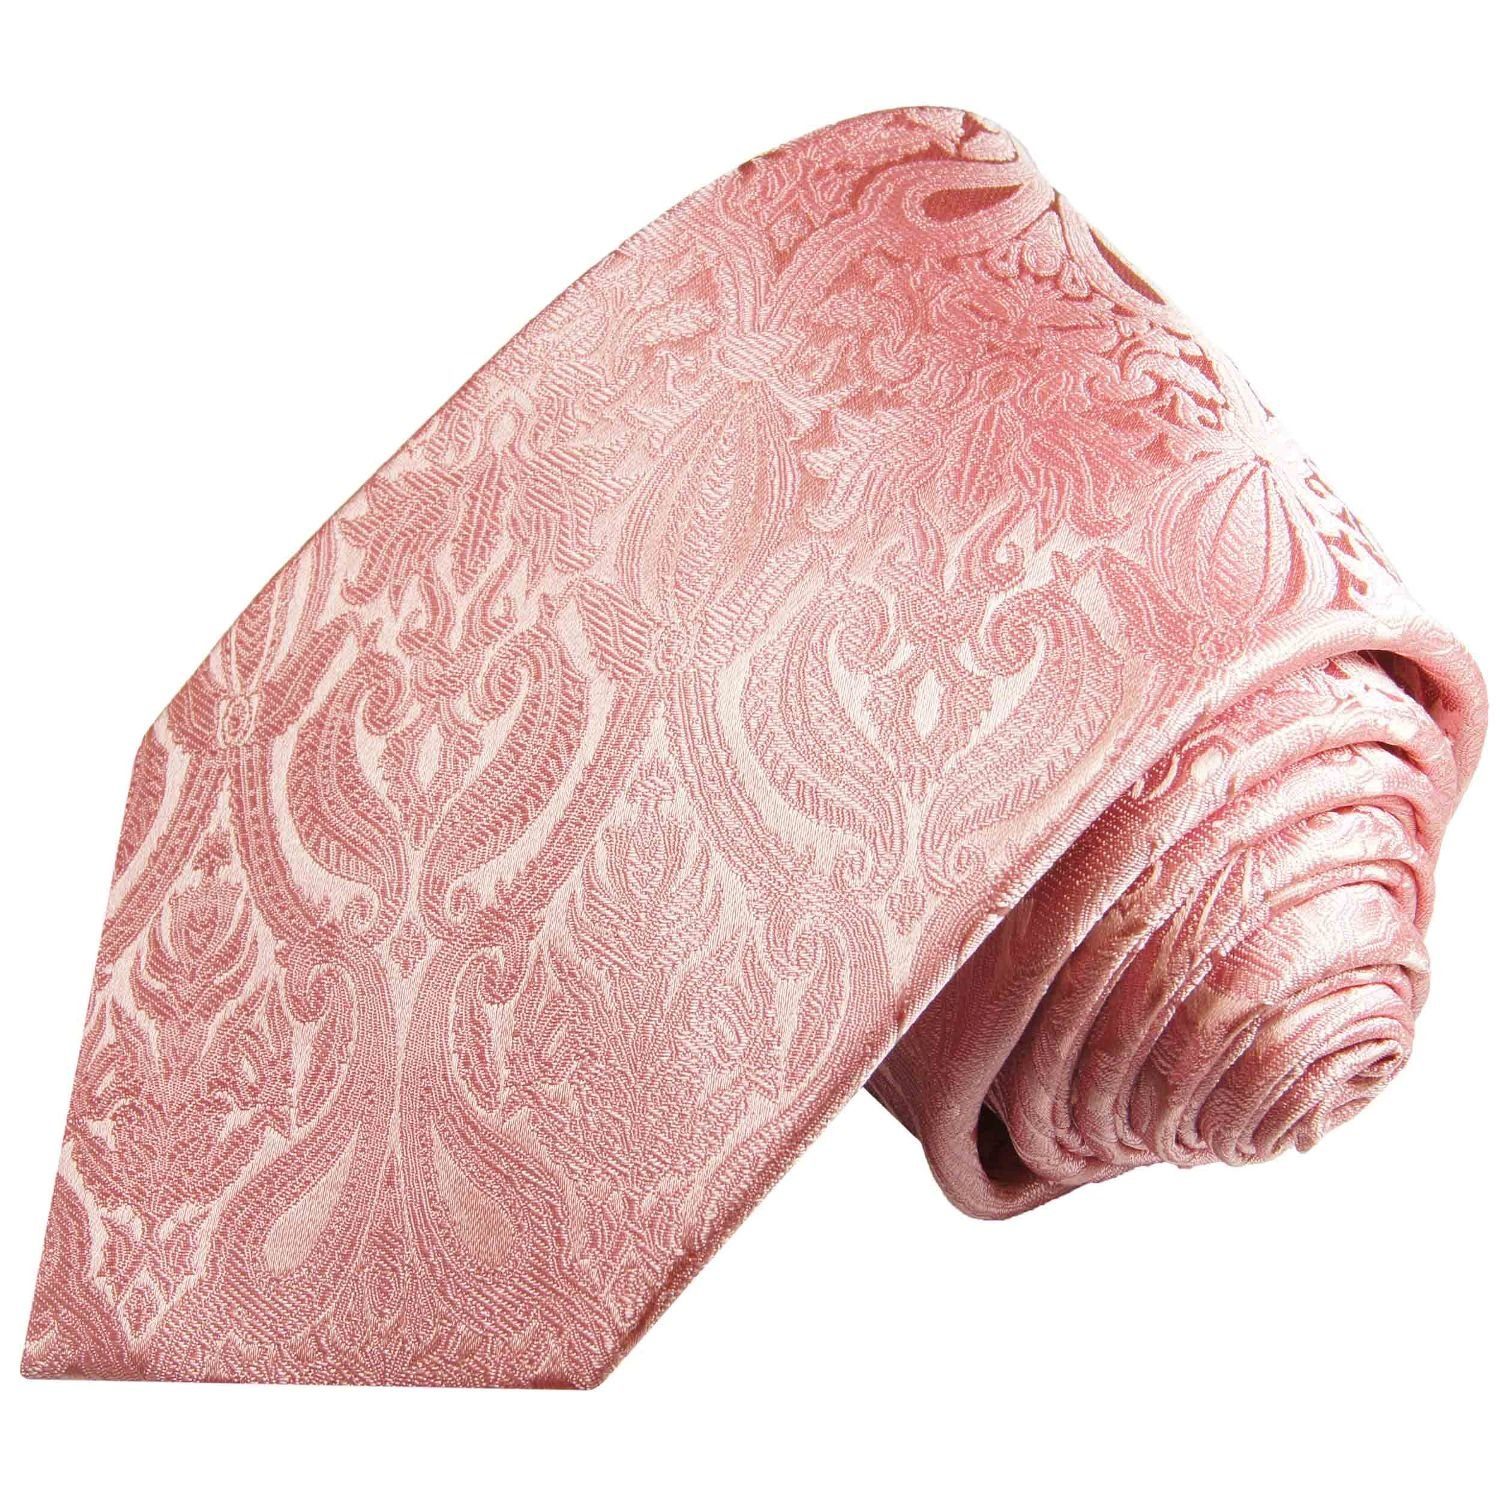 Paul Malone Krawatte Herren Seidenkrawatte Schlips modern barock floral 100% Seide Breit (8cm), rosa pink 366